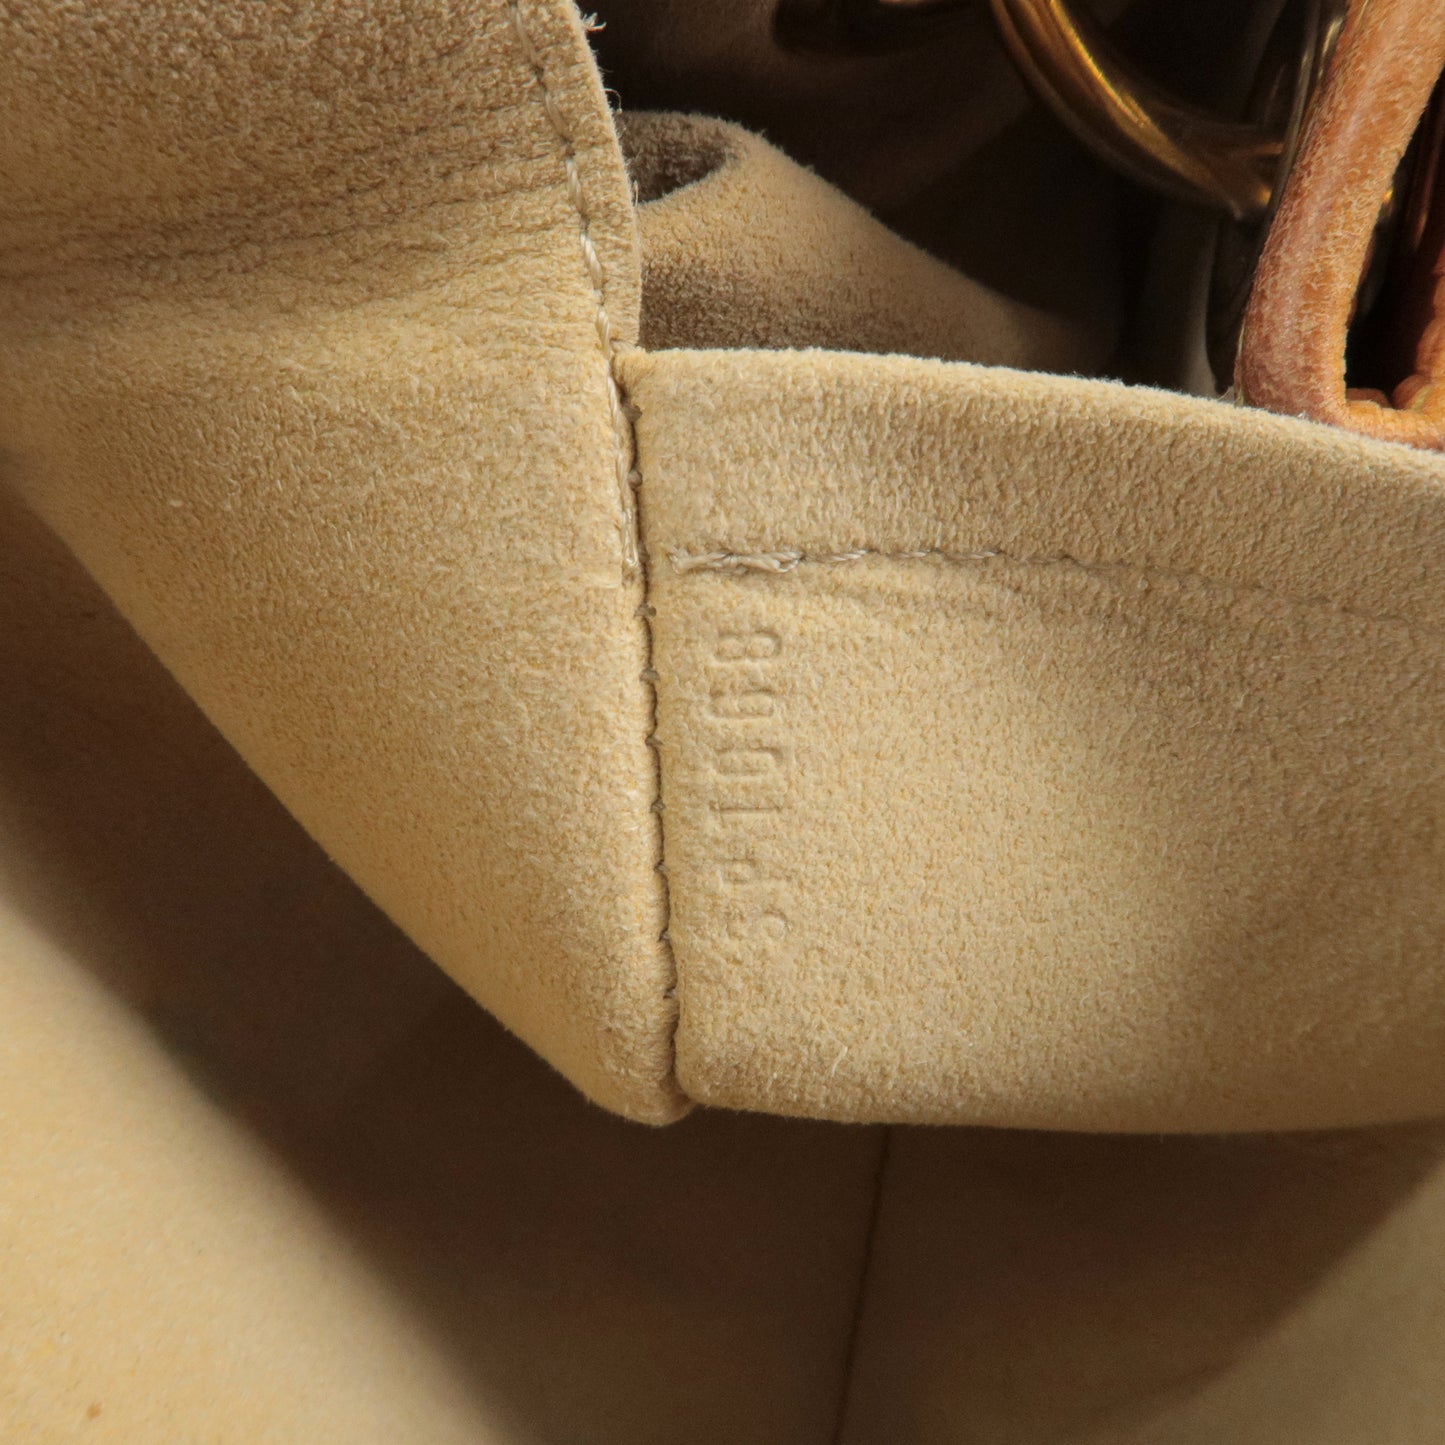 used Pre-owned Louis Vuitton Galliera PM Women's Shoulder Bag M56382 Monogram Brown (Fair), Adult Unisex, Size: (HxWxD): 30cm x 34cm x 12cm / 11.81